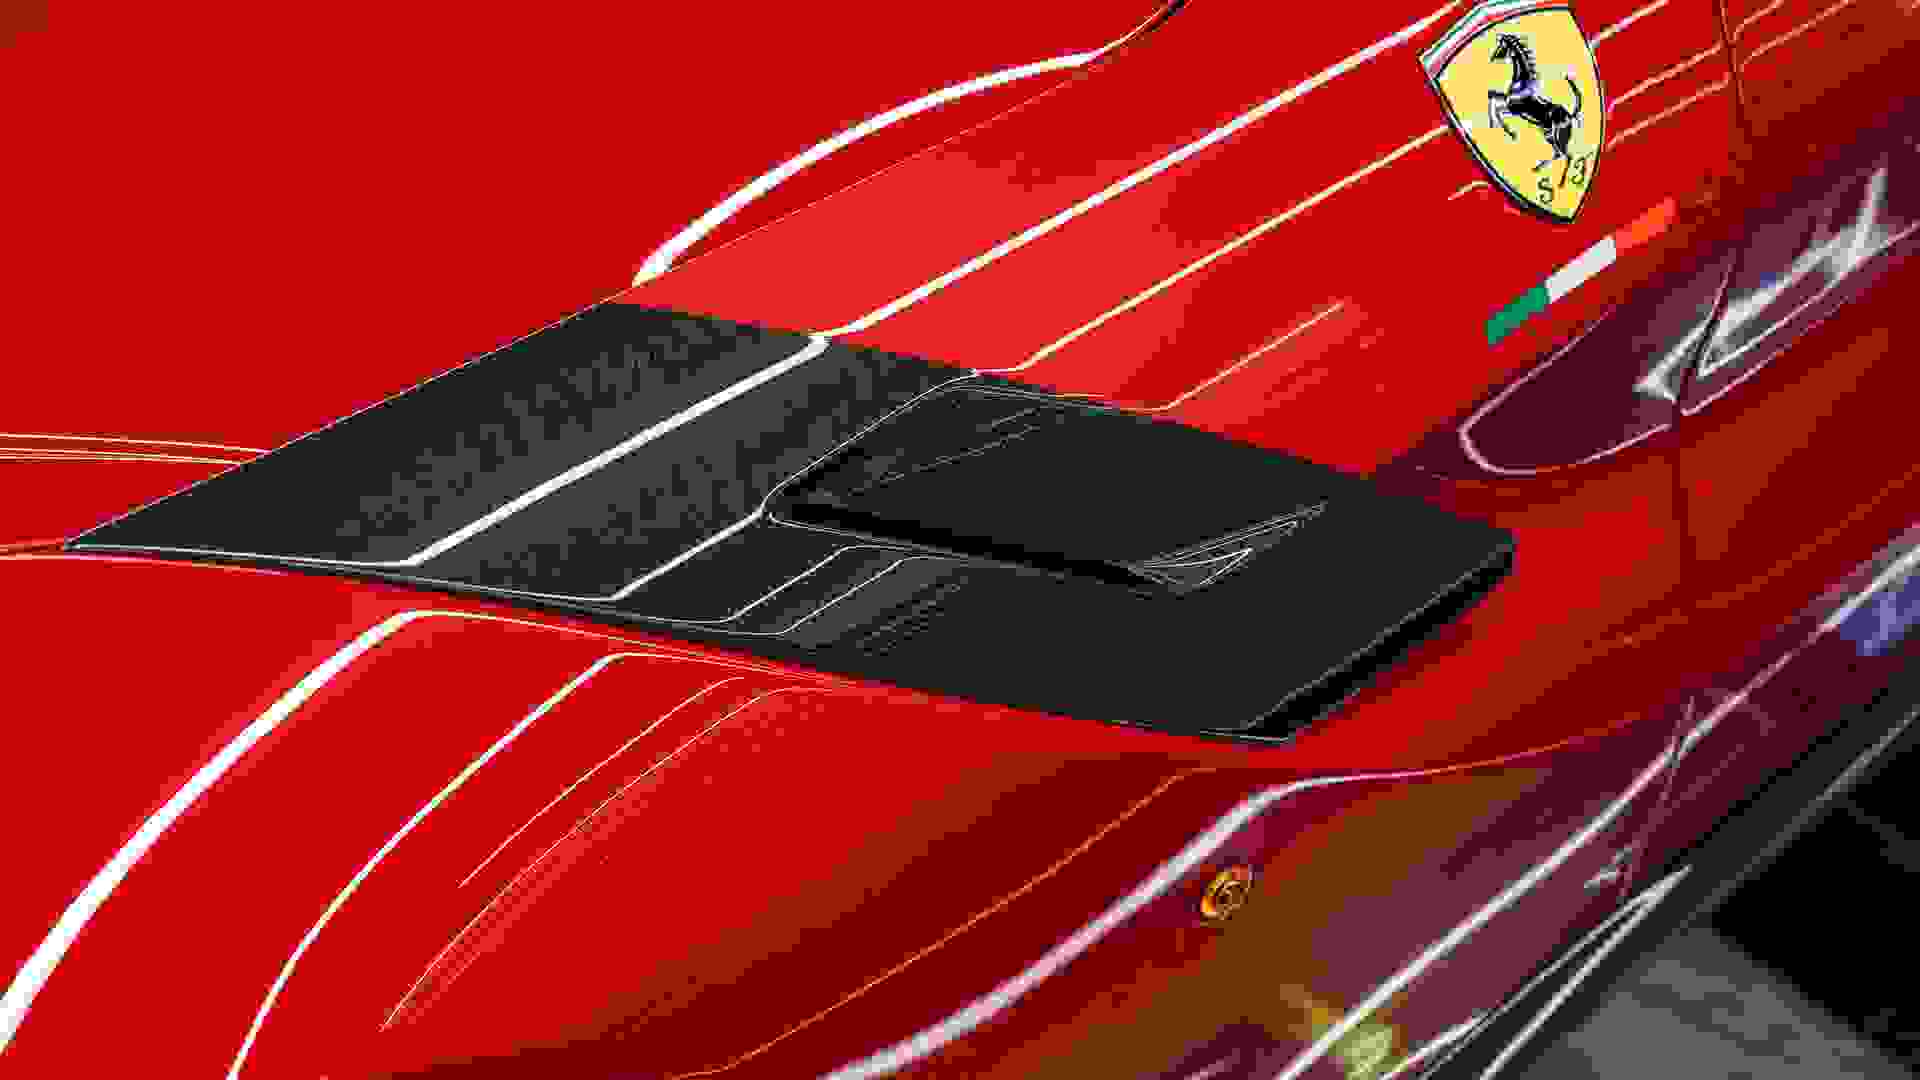 Ferrari F12 Photo ae200443-983a-4001-a6f2-21215571b6ef.jpg